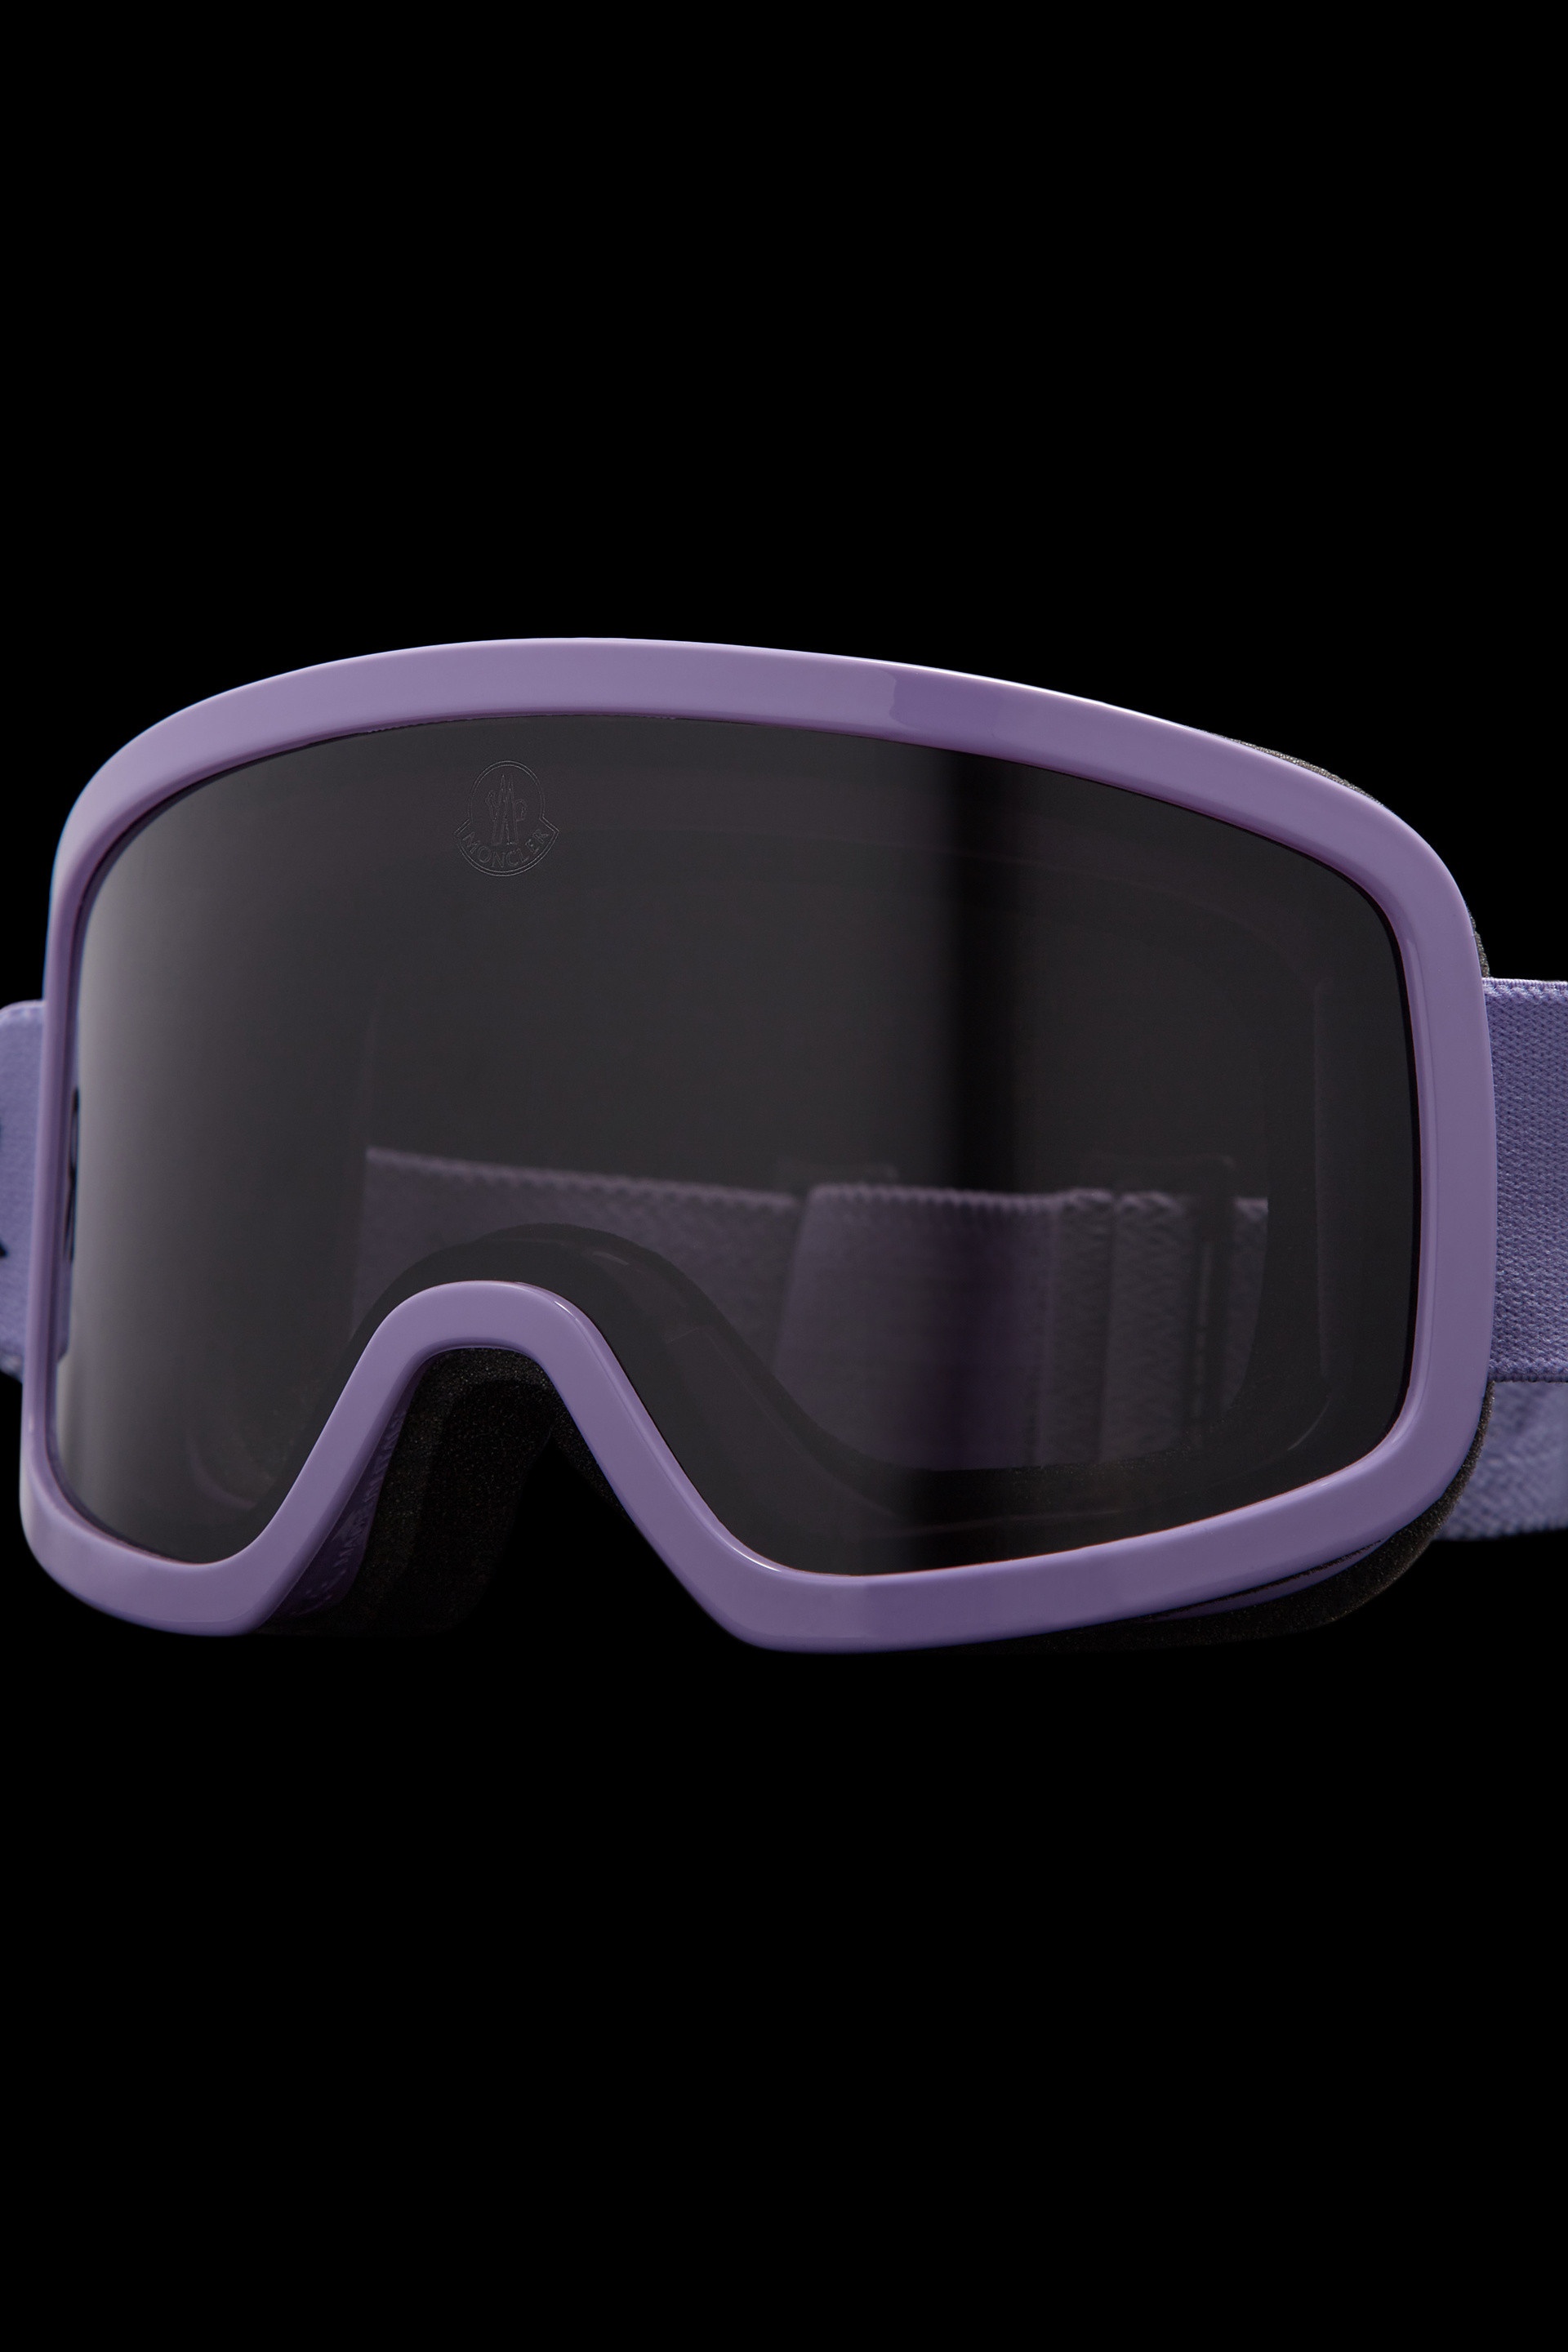 Terrabeam Ski Goggles - 4